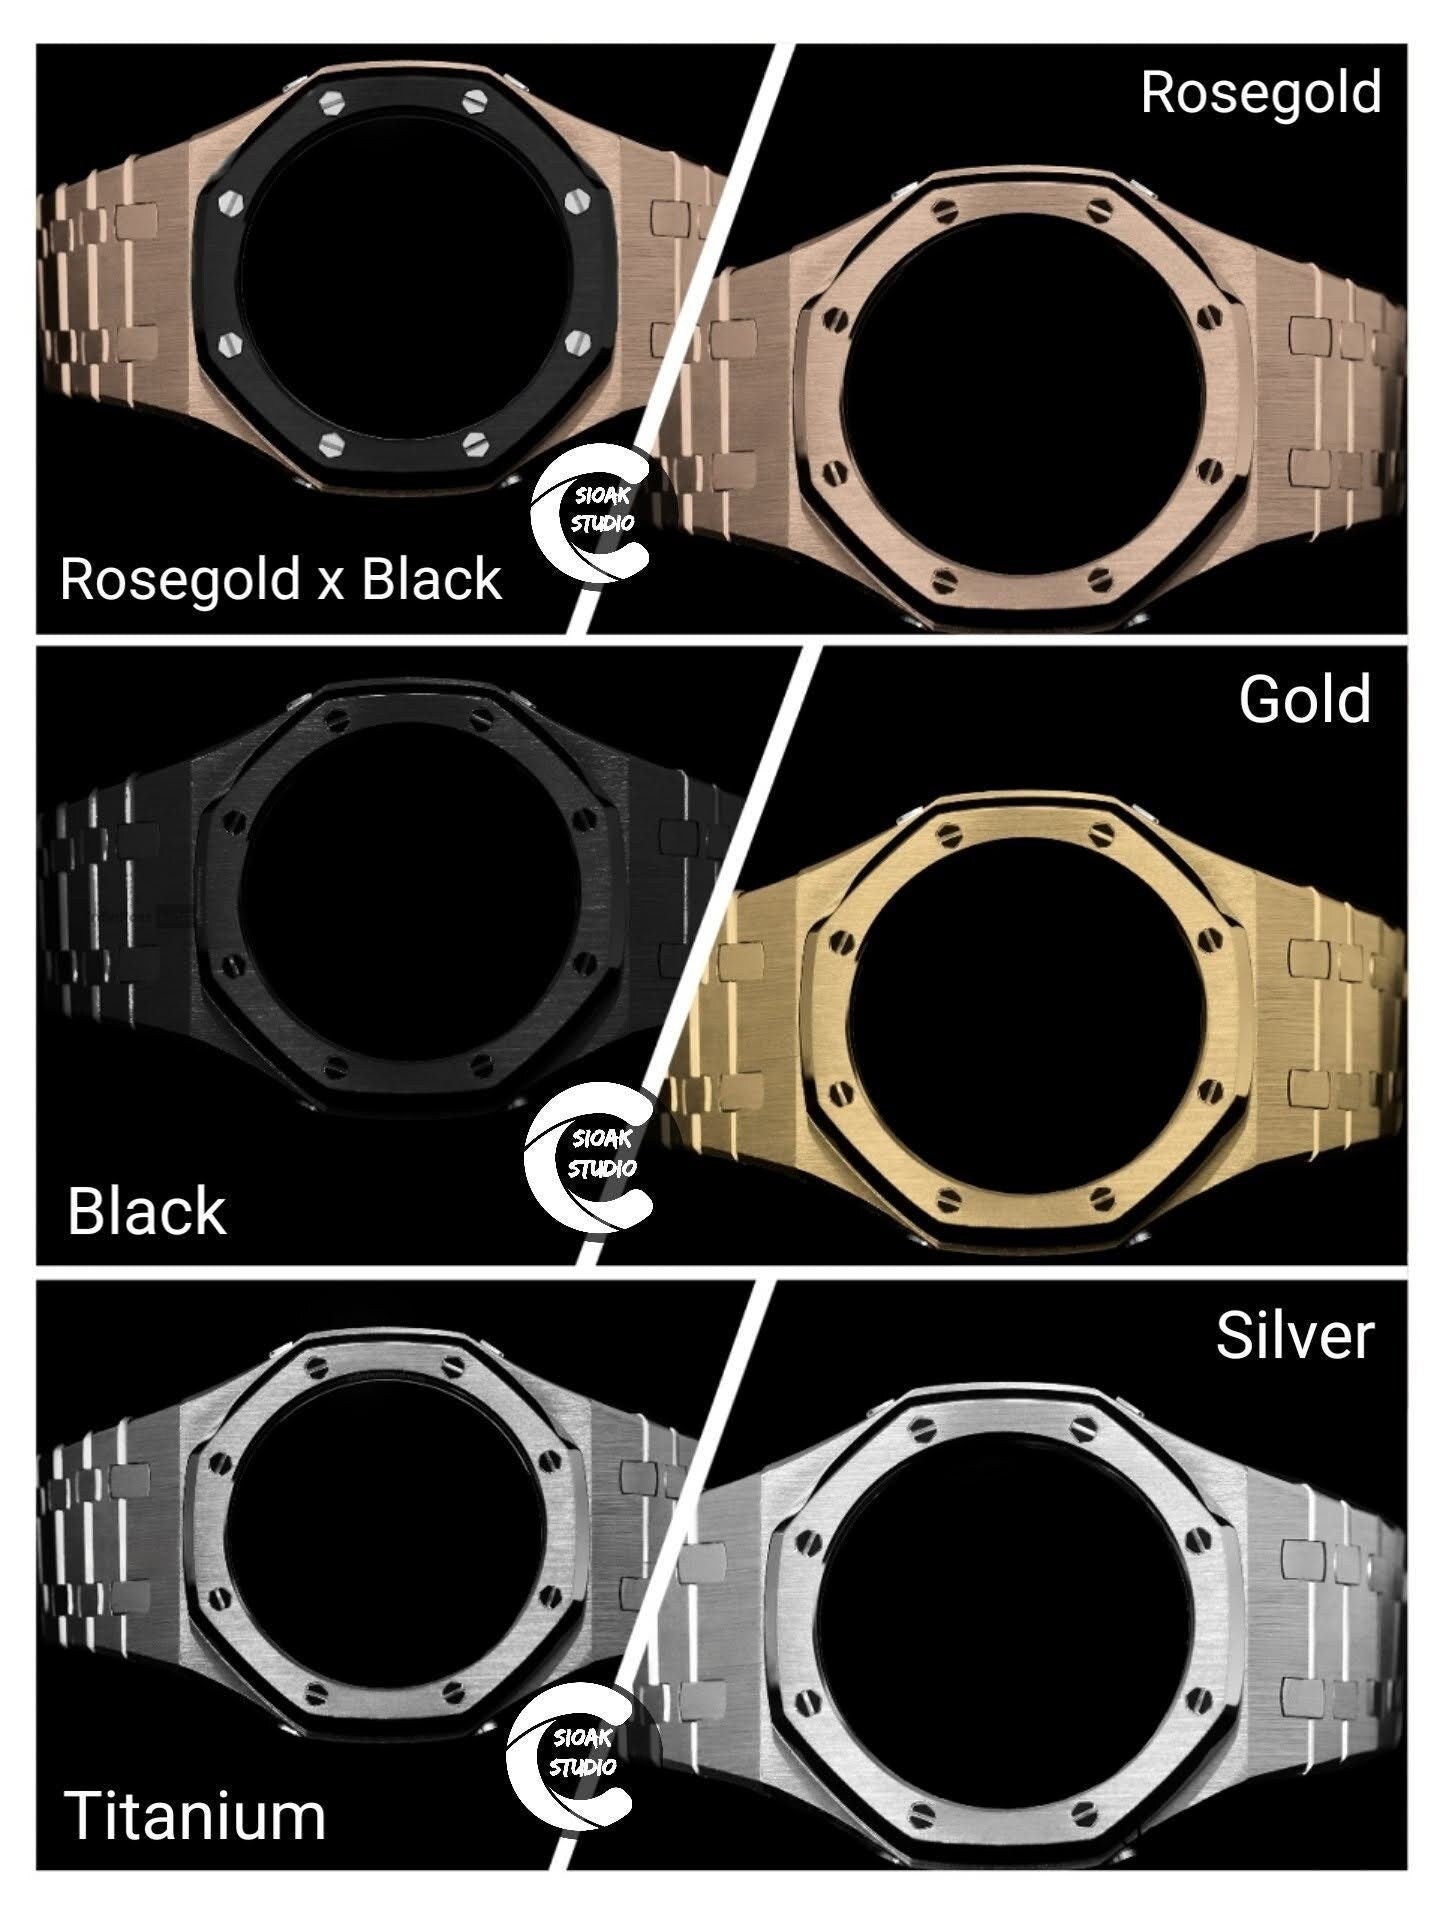 Casioak Mod Watch Black Case Metal Strap Gold Time Mark Gold Dial 44mm - Casioak Studio